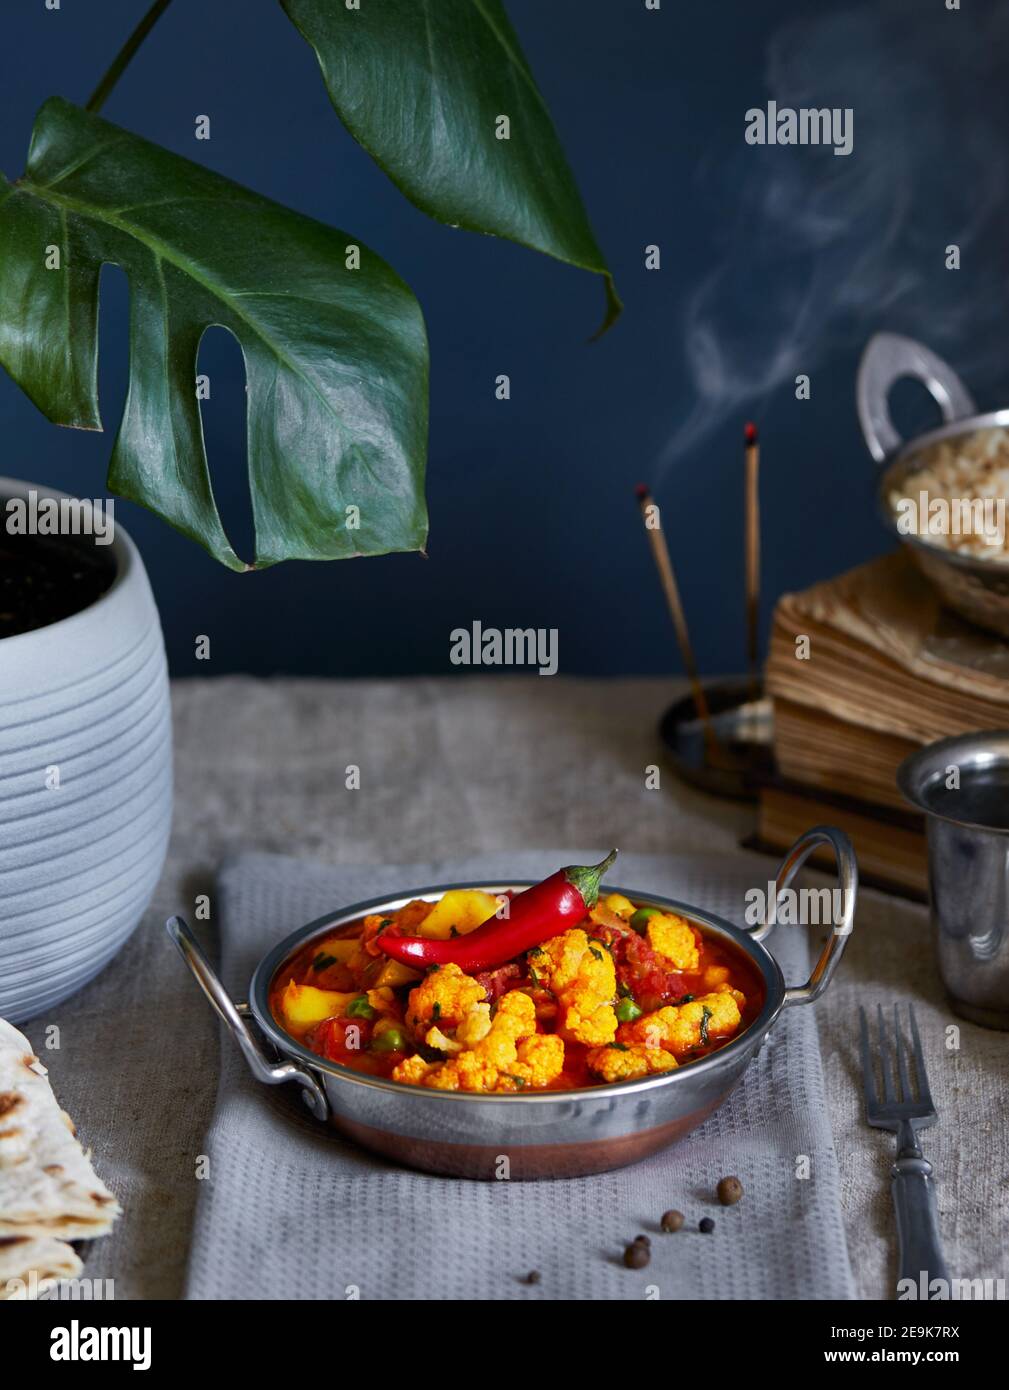 Aloo gobi traditionelle indische Gerichte aus Blumenkohl und Kartoffeln mit rotem Chili, serviert mit braunem Reis, Zitronenwasser und Chapati auf dem Tisch Stockfoto